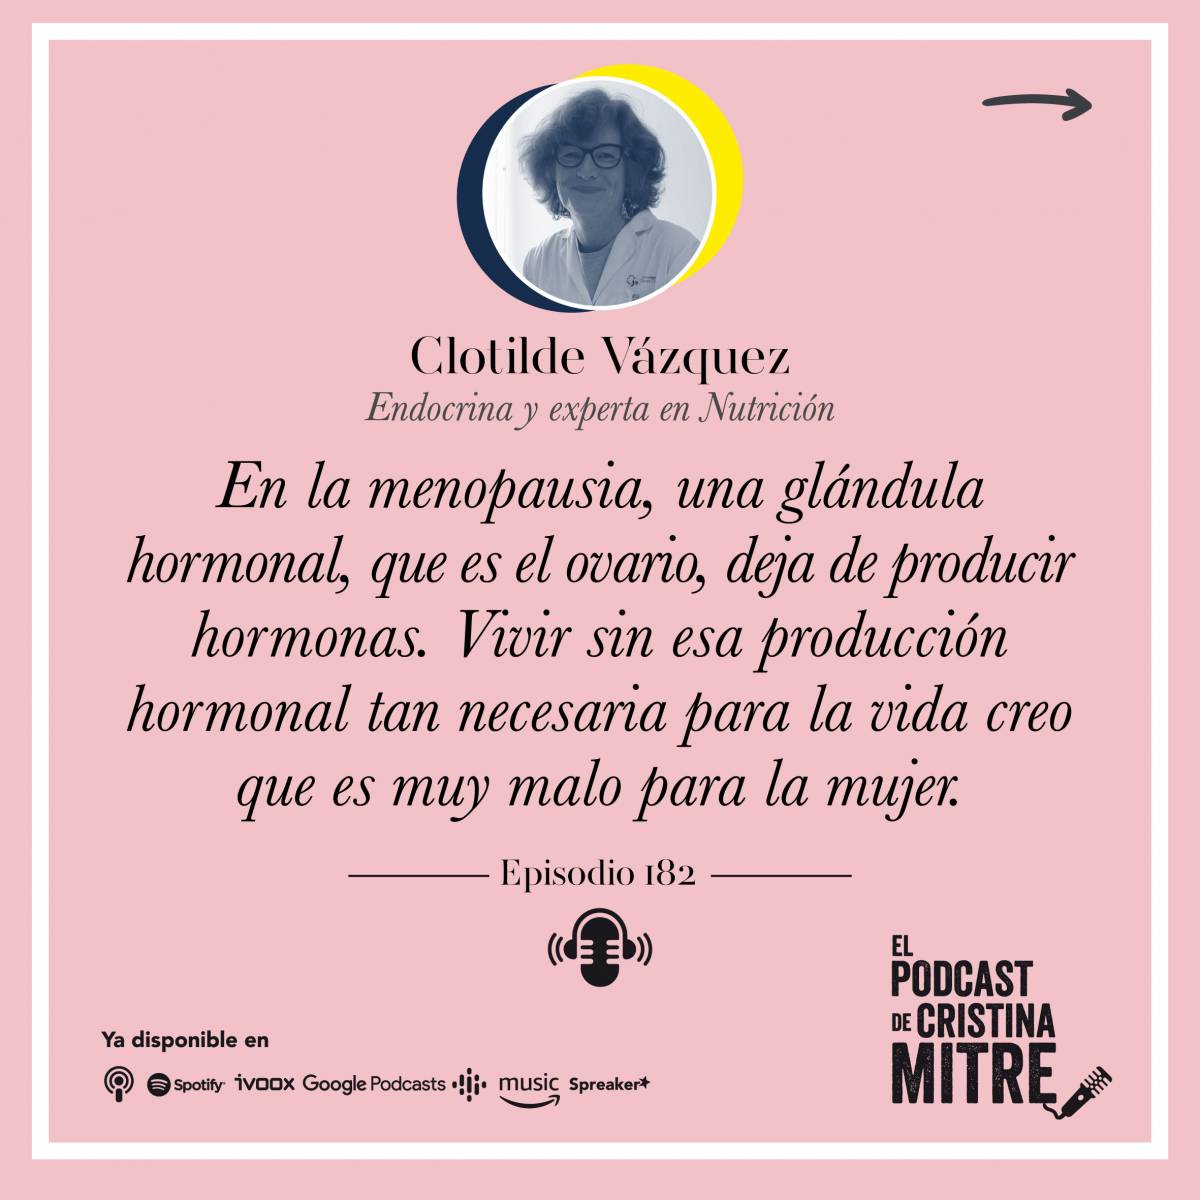 El podcast de Cristina Mitre Clotilde Vázquez Perimenopausia menopausia